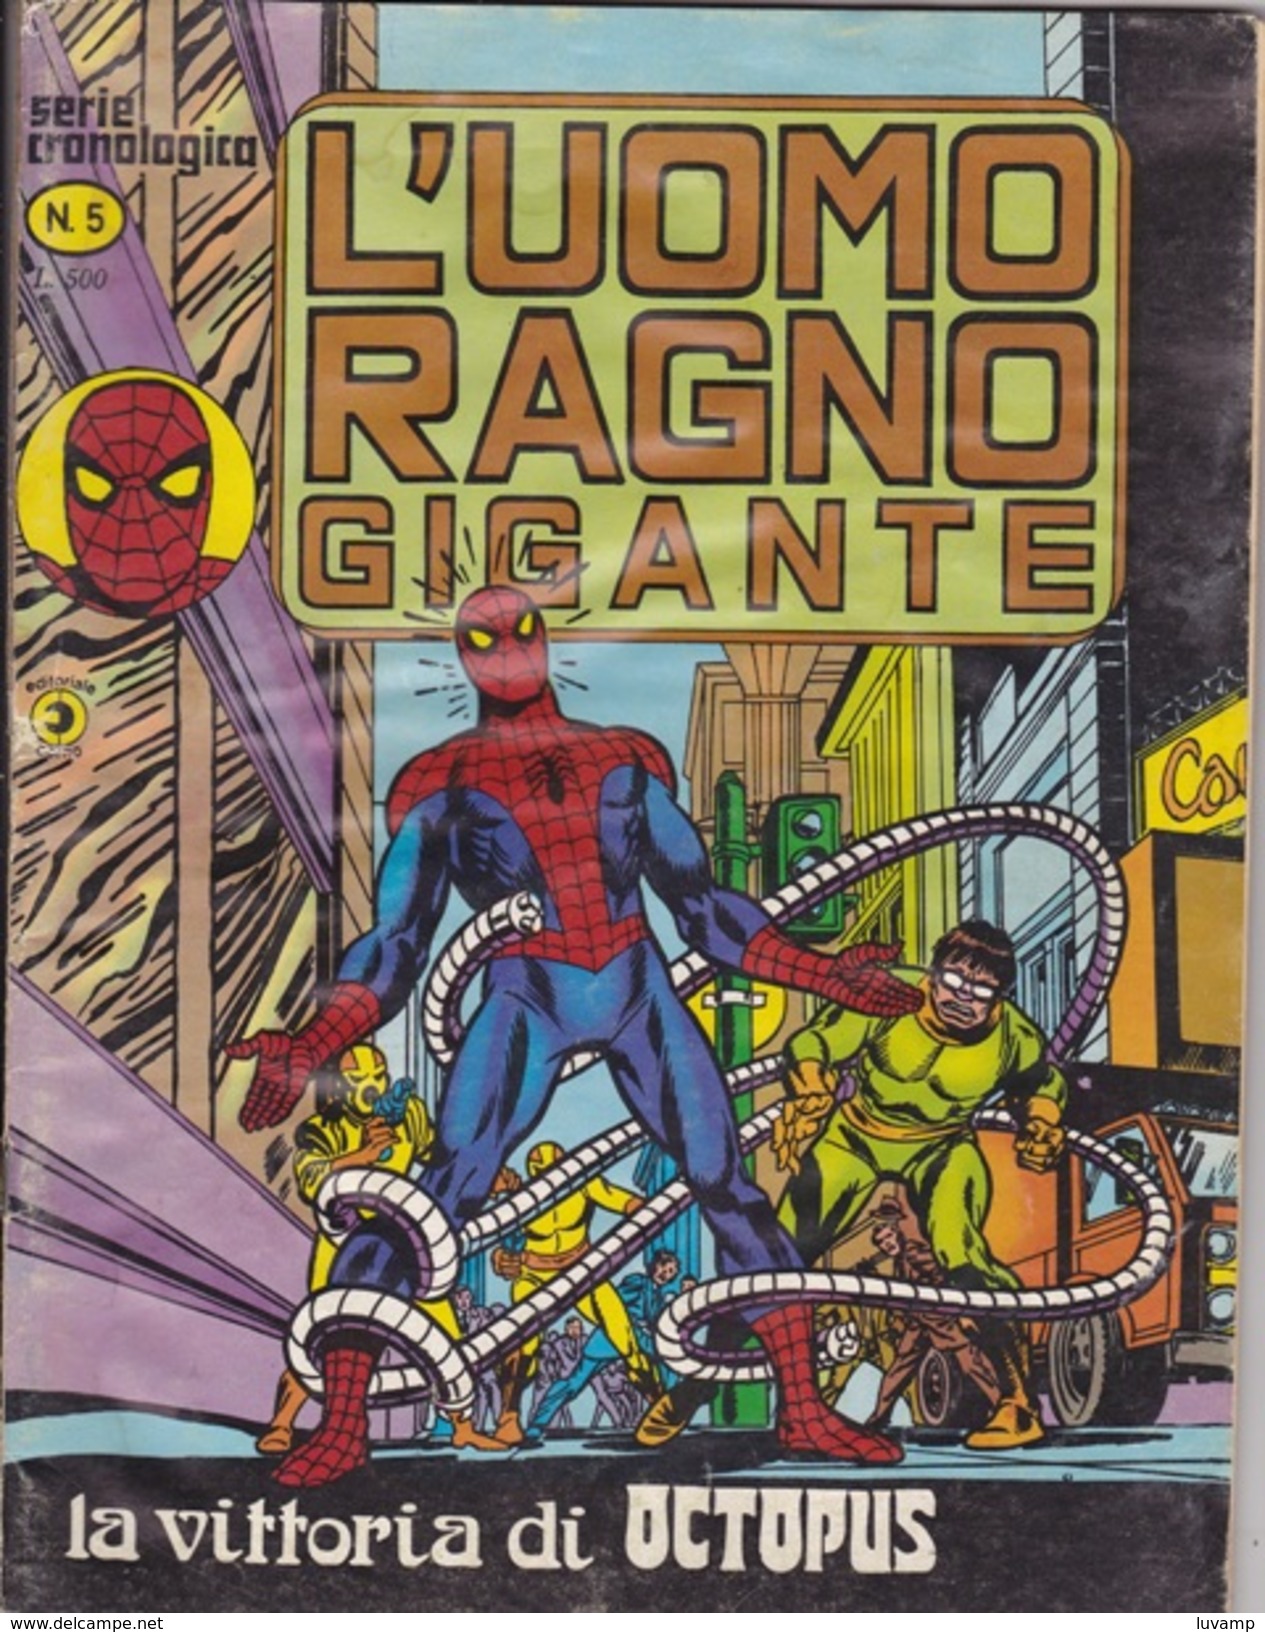 L'UOMO RAGNO GIGANTE -Serie Cronologica - Editore CORNO -N. 5 (240912) - Spider Man